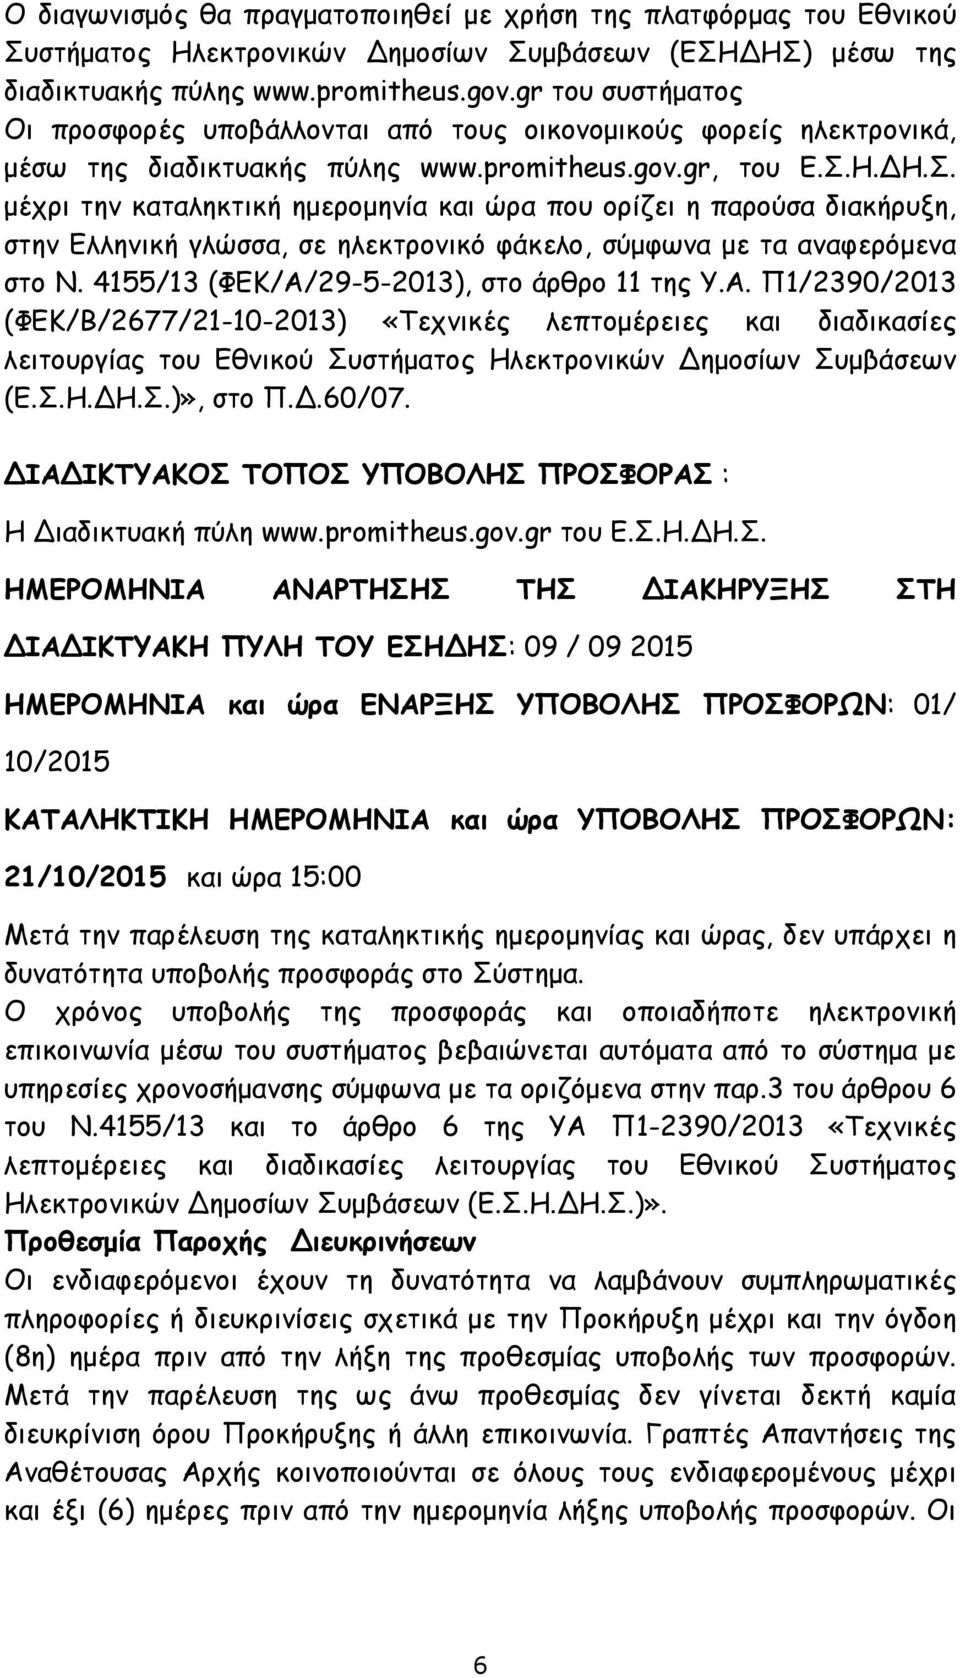 Η.ΔΗ.Σ. μέχρι την καταληκτική ημερομηνία και ώρα που ορίζει η παρούσα διακήρυξη, στην Ελληνική γλώσσα, σε ηλεκτρονικό φάκελο, σύμφωνα με τα αναφερόμενα στο Ν.